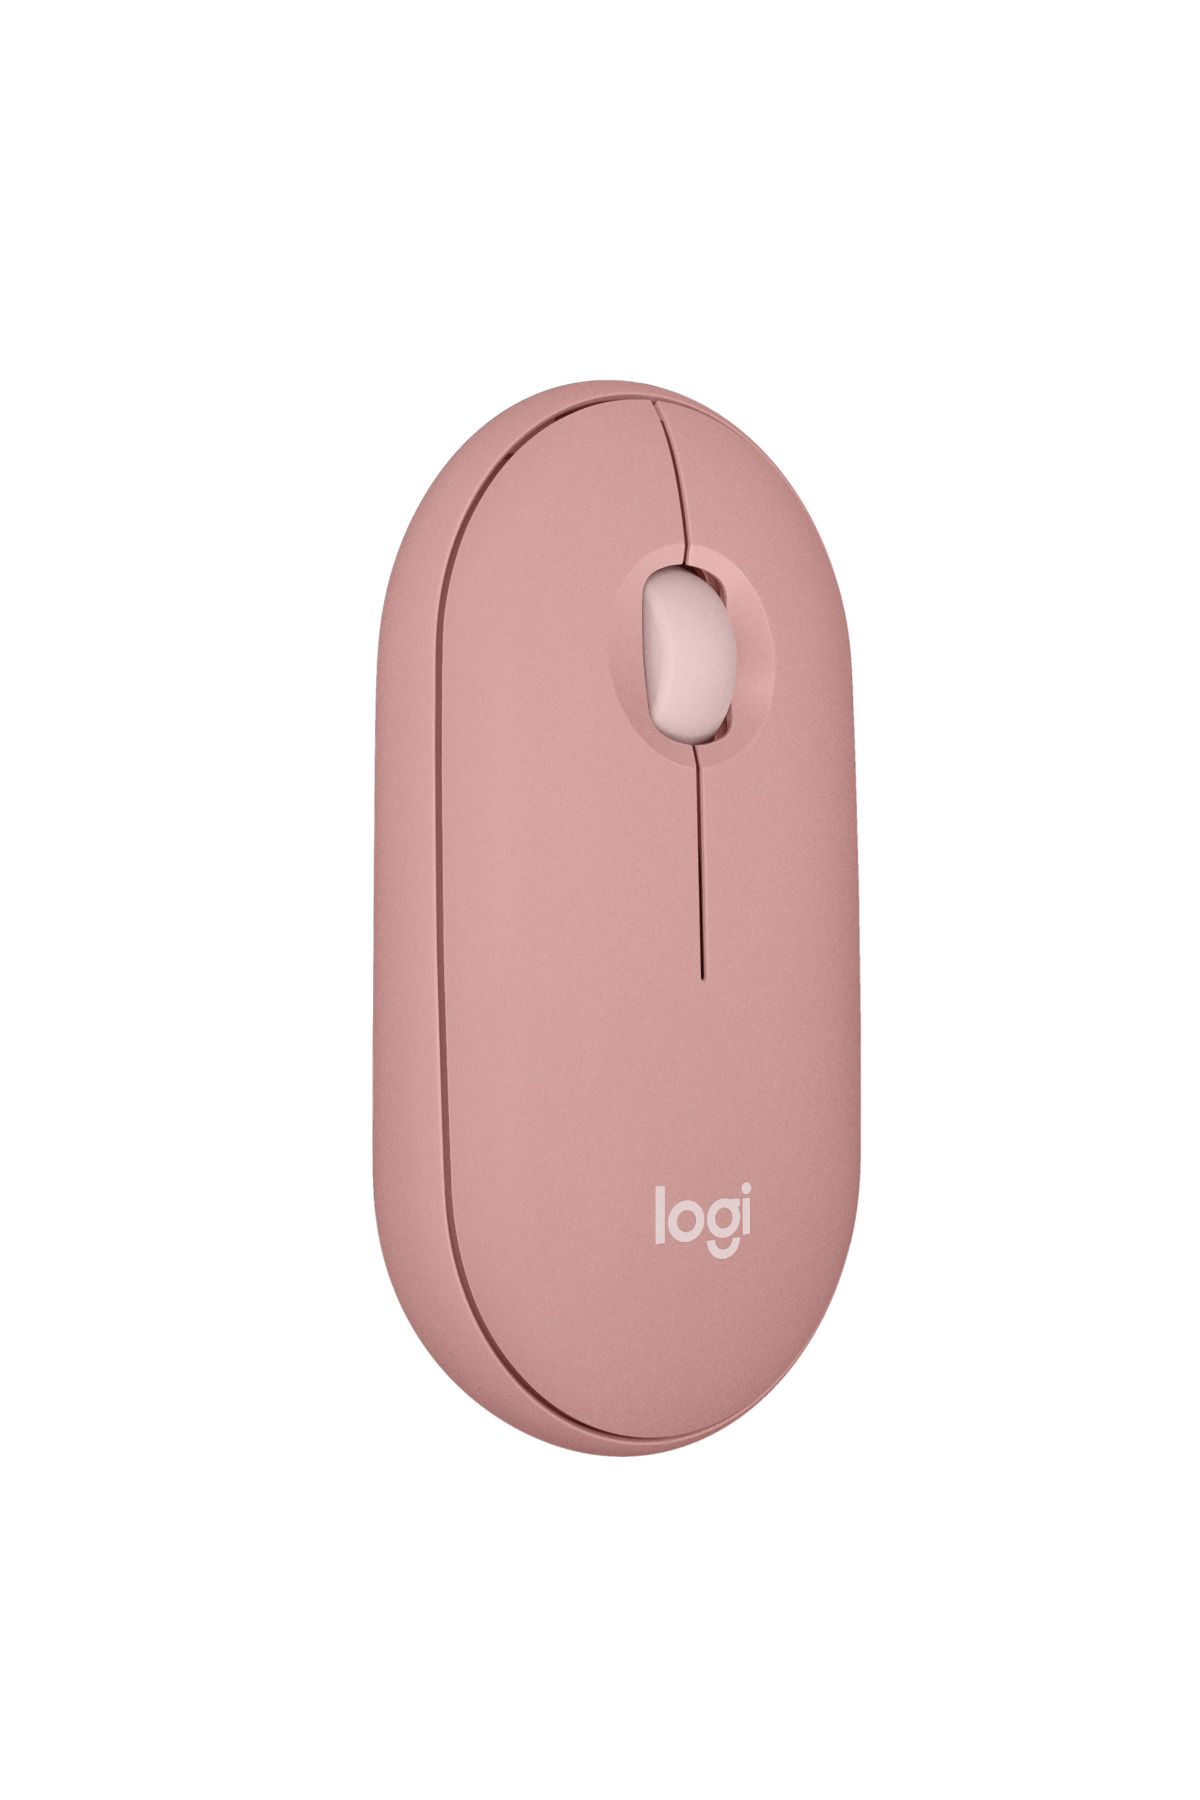 logitech M350s Pebble 2 Kablosuz Mouse - Pembe 910-007015